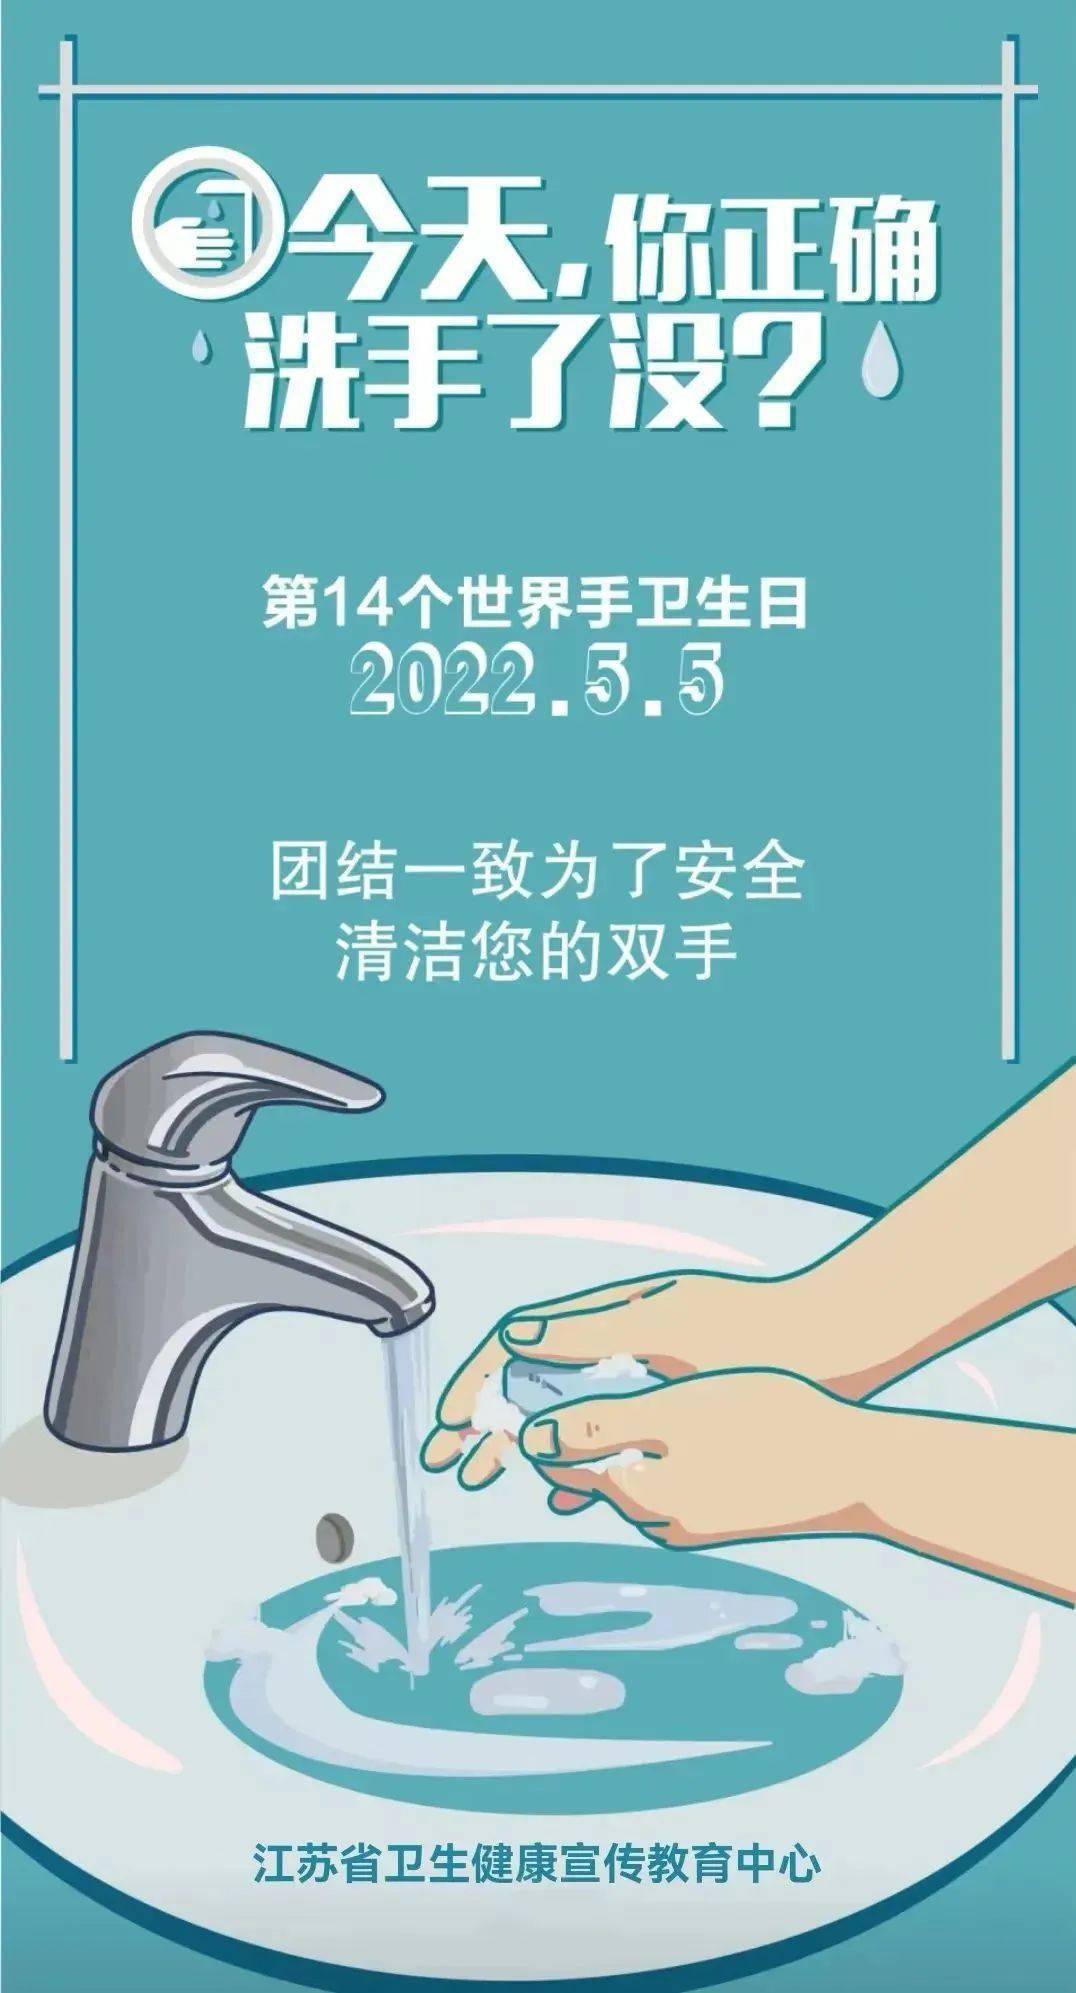 国际洗手日与手卫生日图片